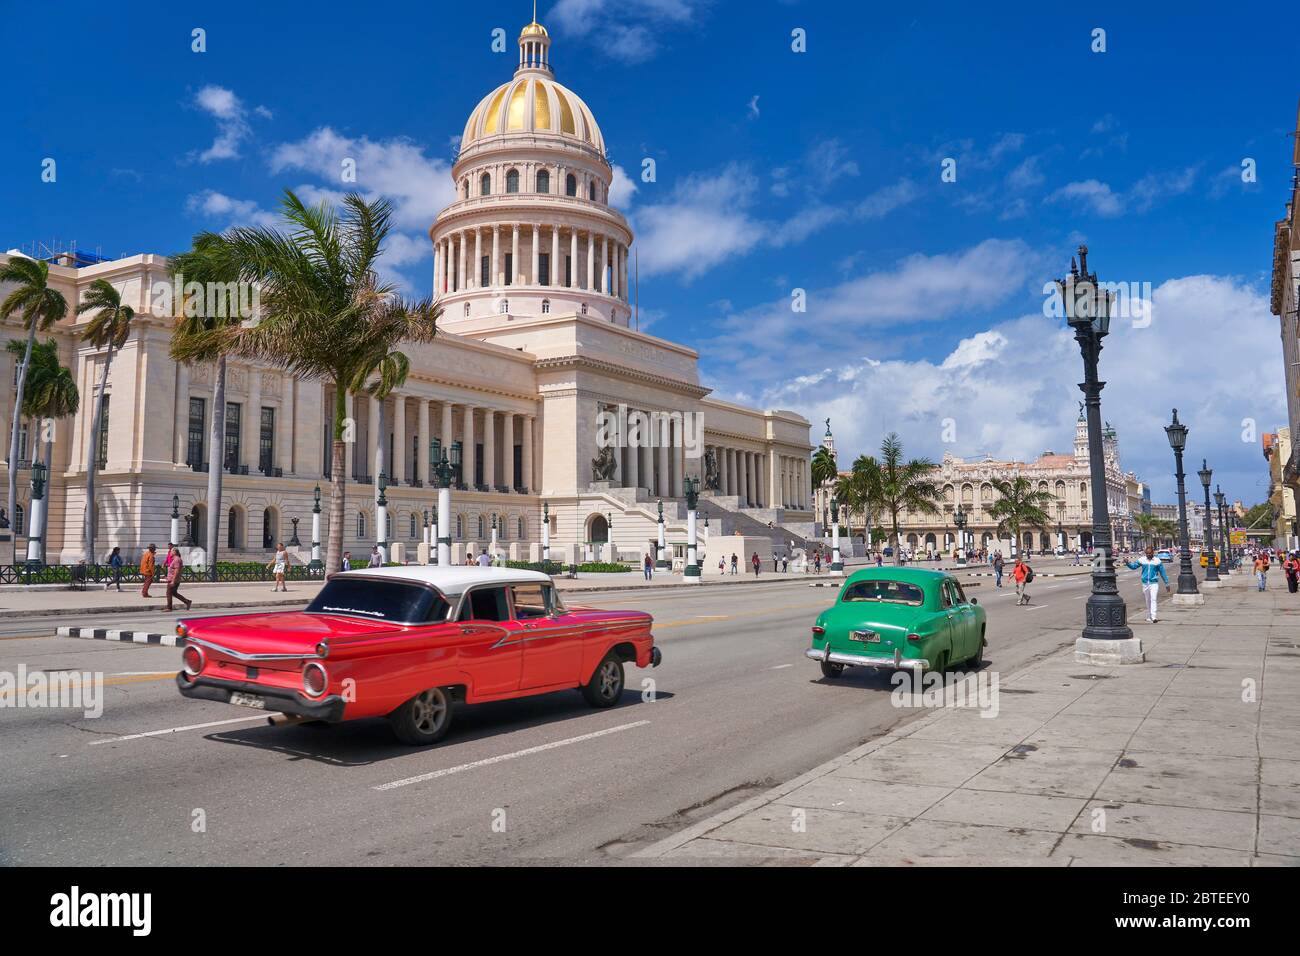 Bâtiment du Capitole et vieille voiture rouge américaine, la Havane, Cuba Banque D'Images